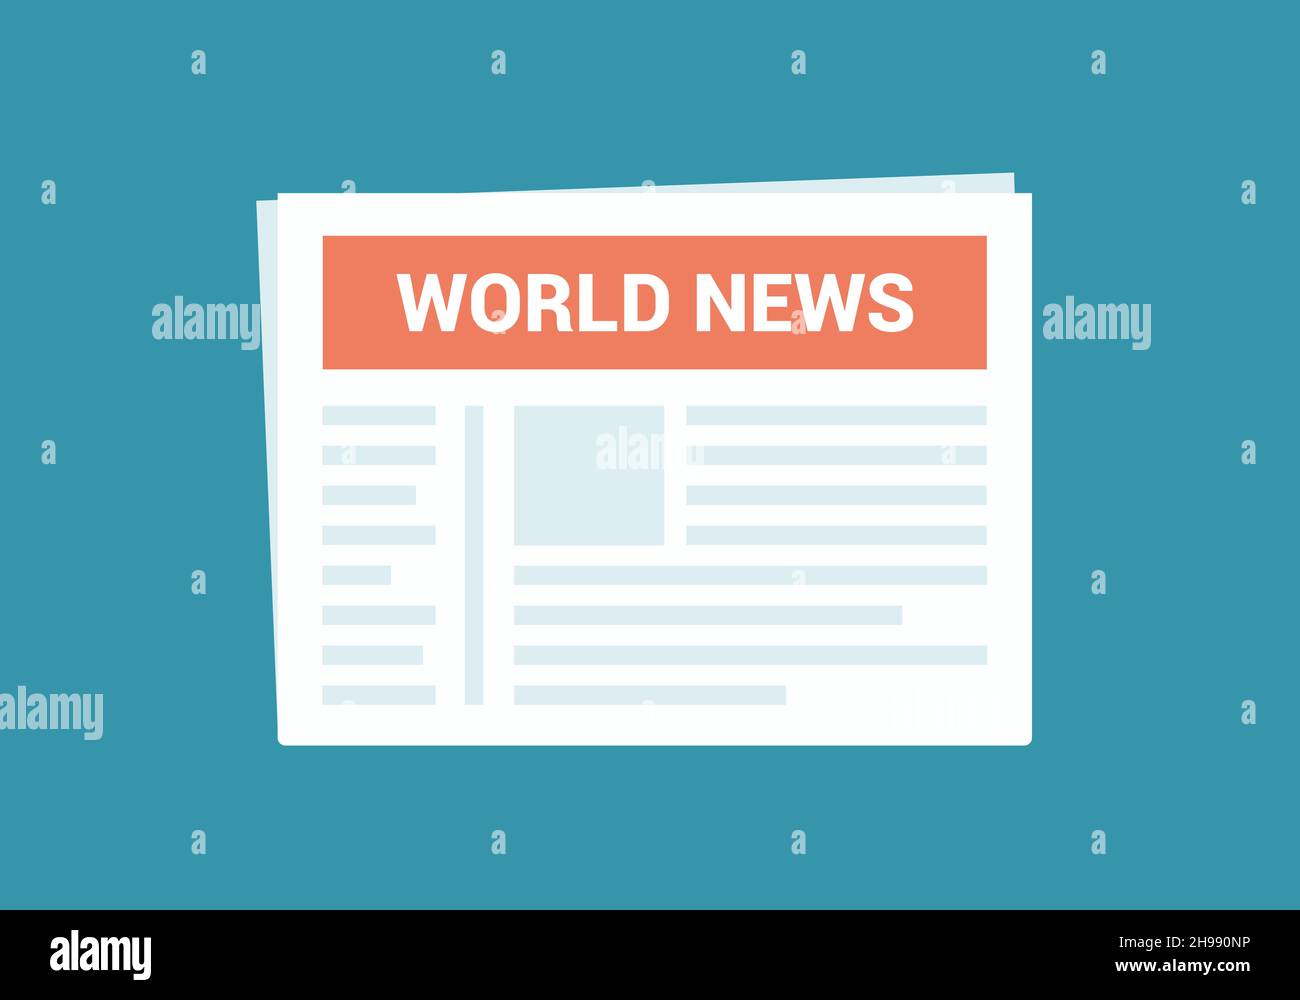 Flat Design Papier Zeitung der Welt. Roter Header mit Titel und grünem Hintergrund - Vektor Stock Vektor